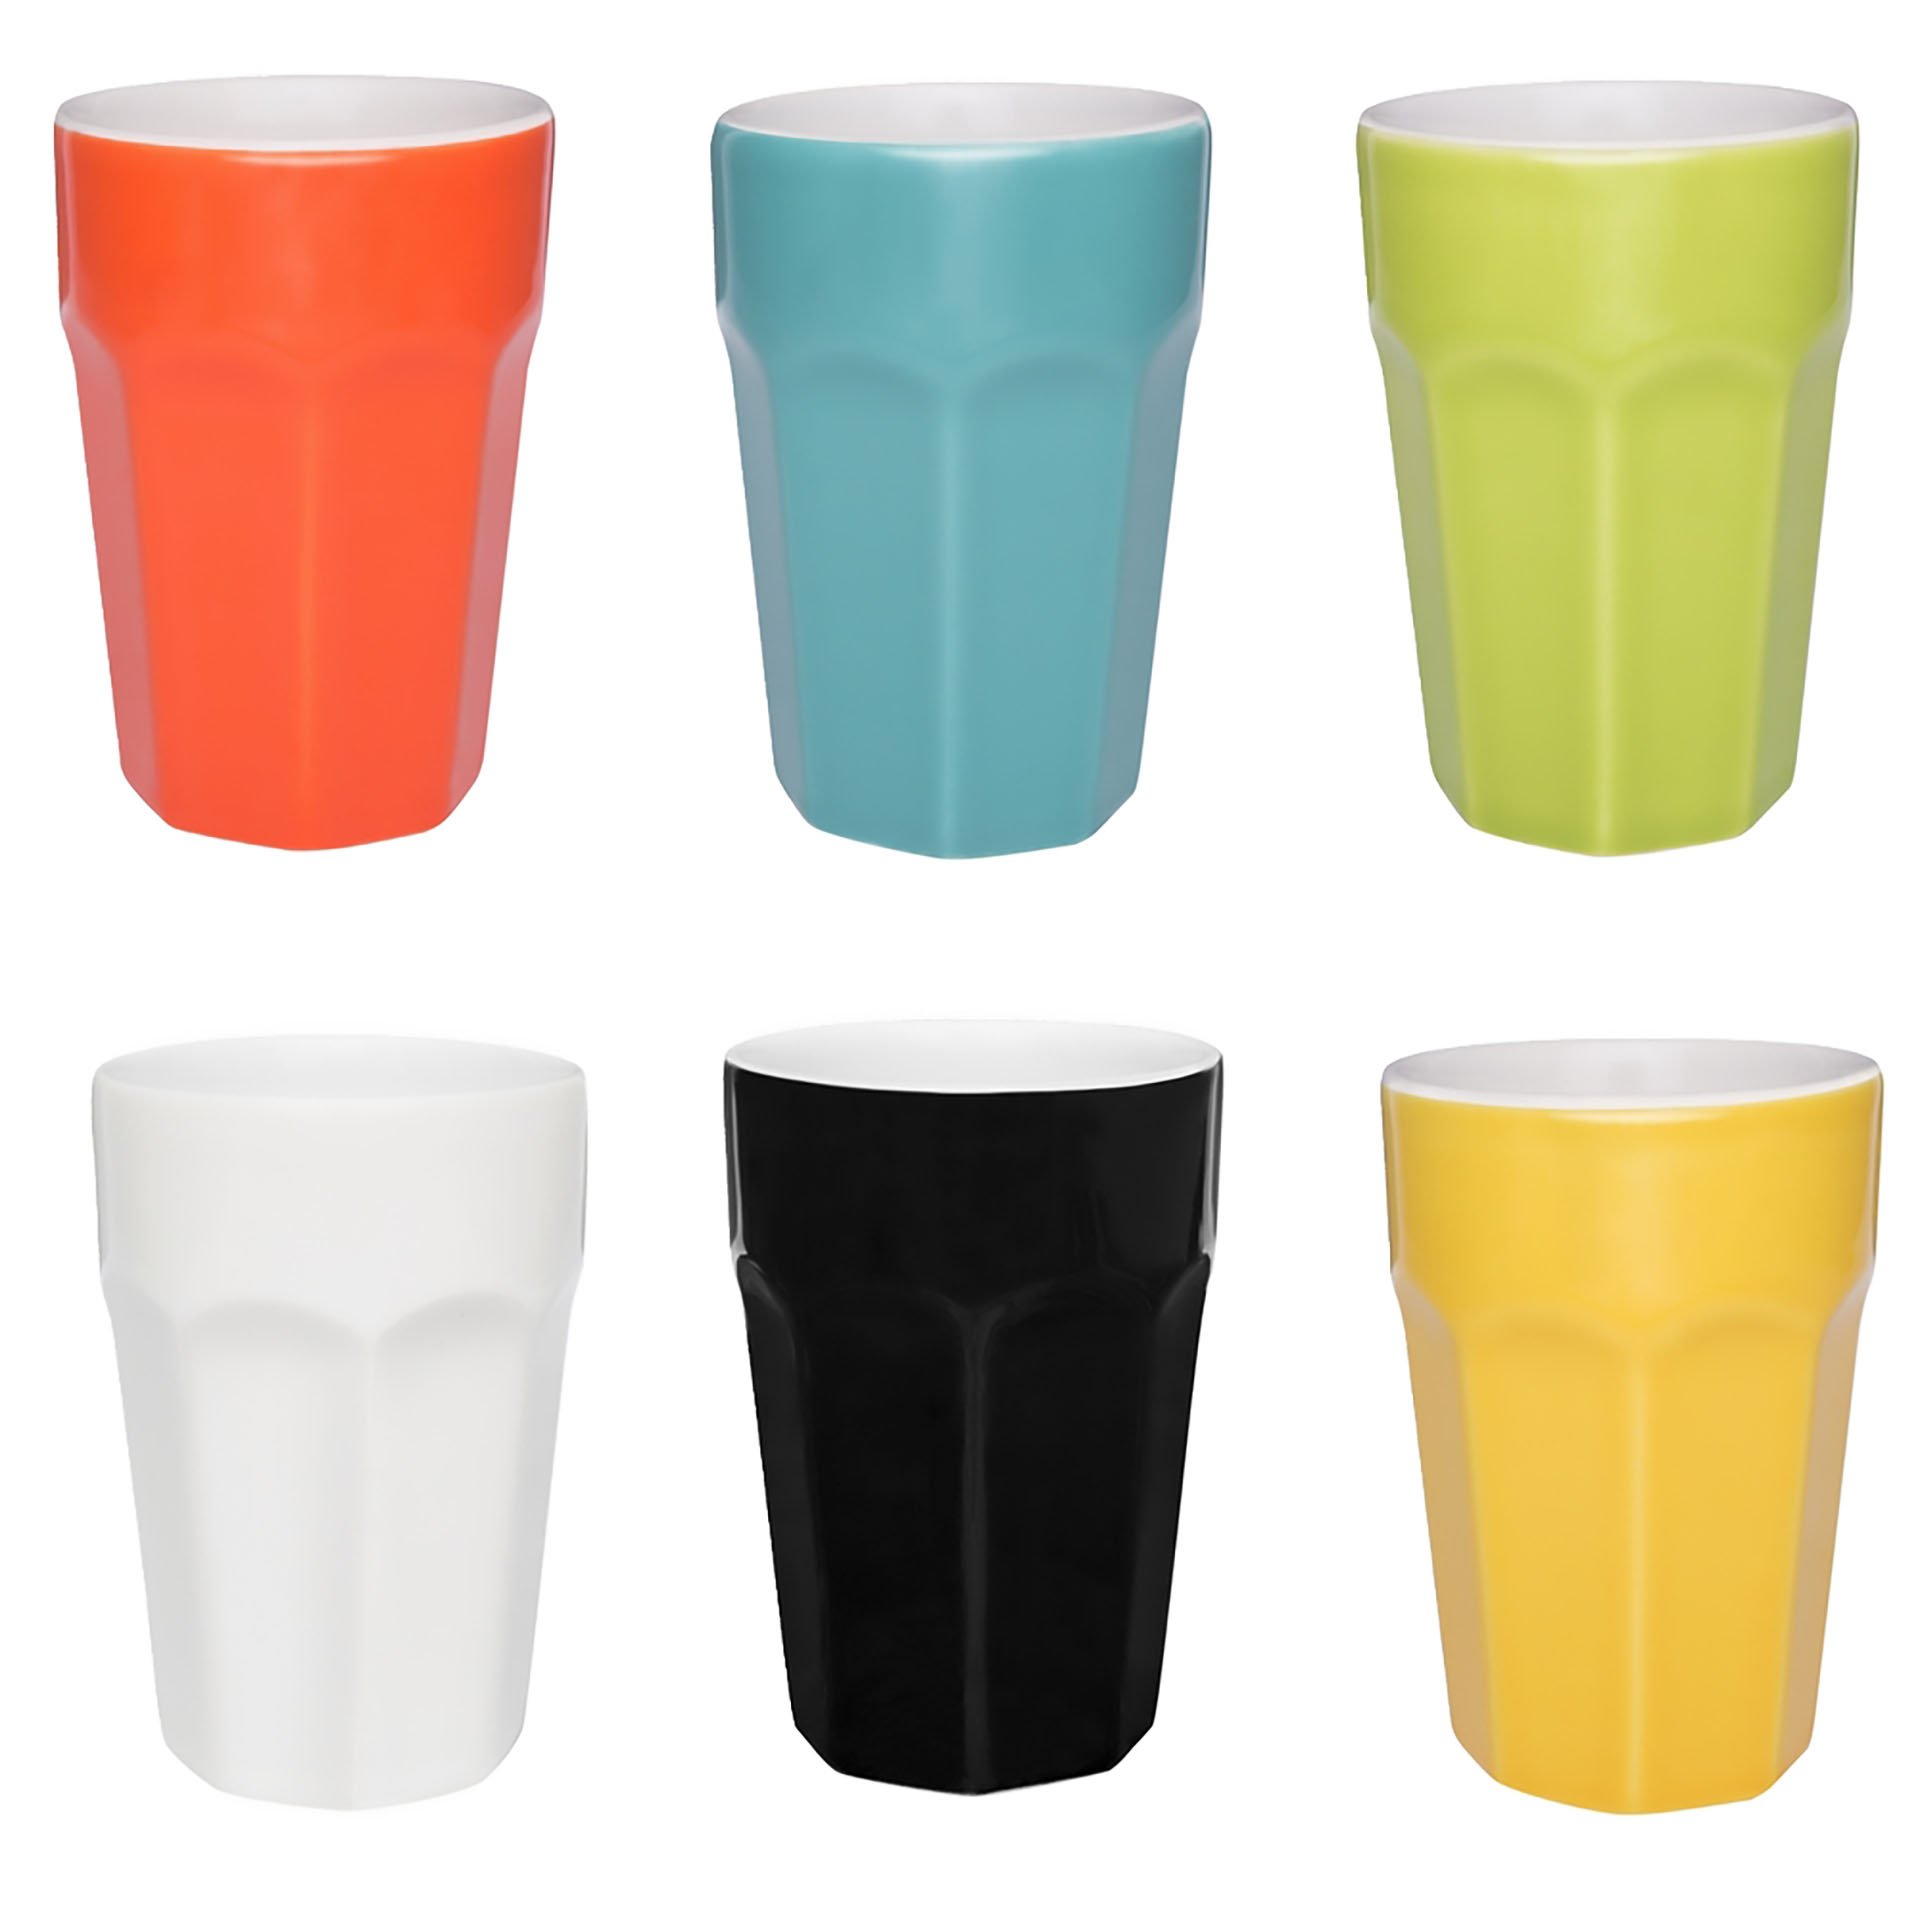 Texto: Os copos coloridos da Oxford são proposta de produtos reutilizáveis, pois podem substituir os copos descartáveis no ambiente de trabalho, por exemplo.